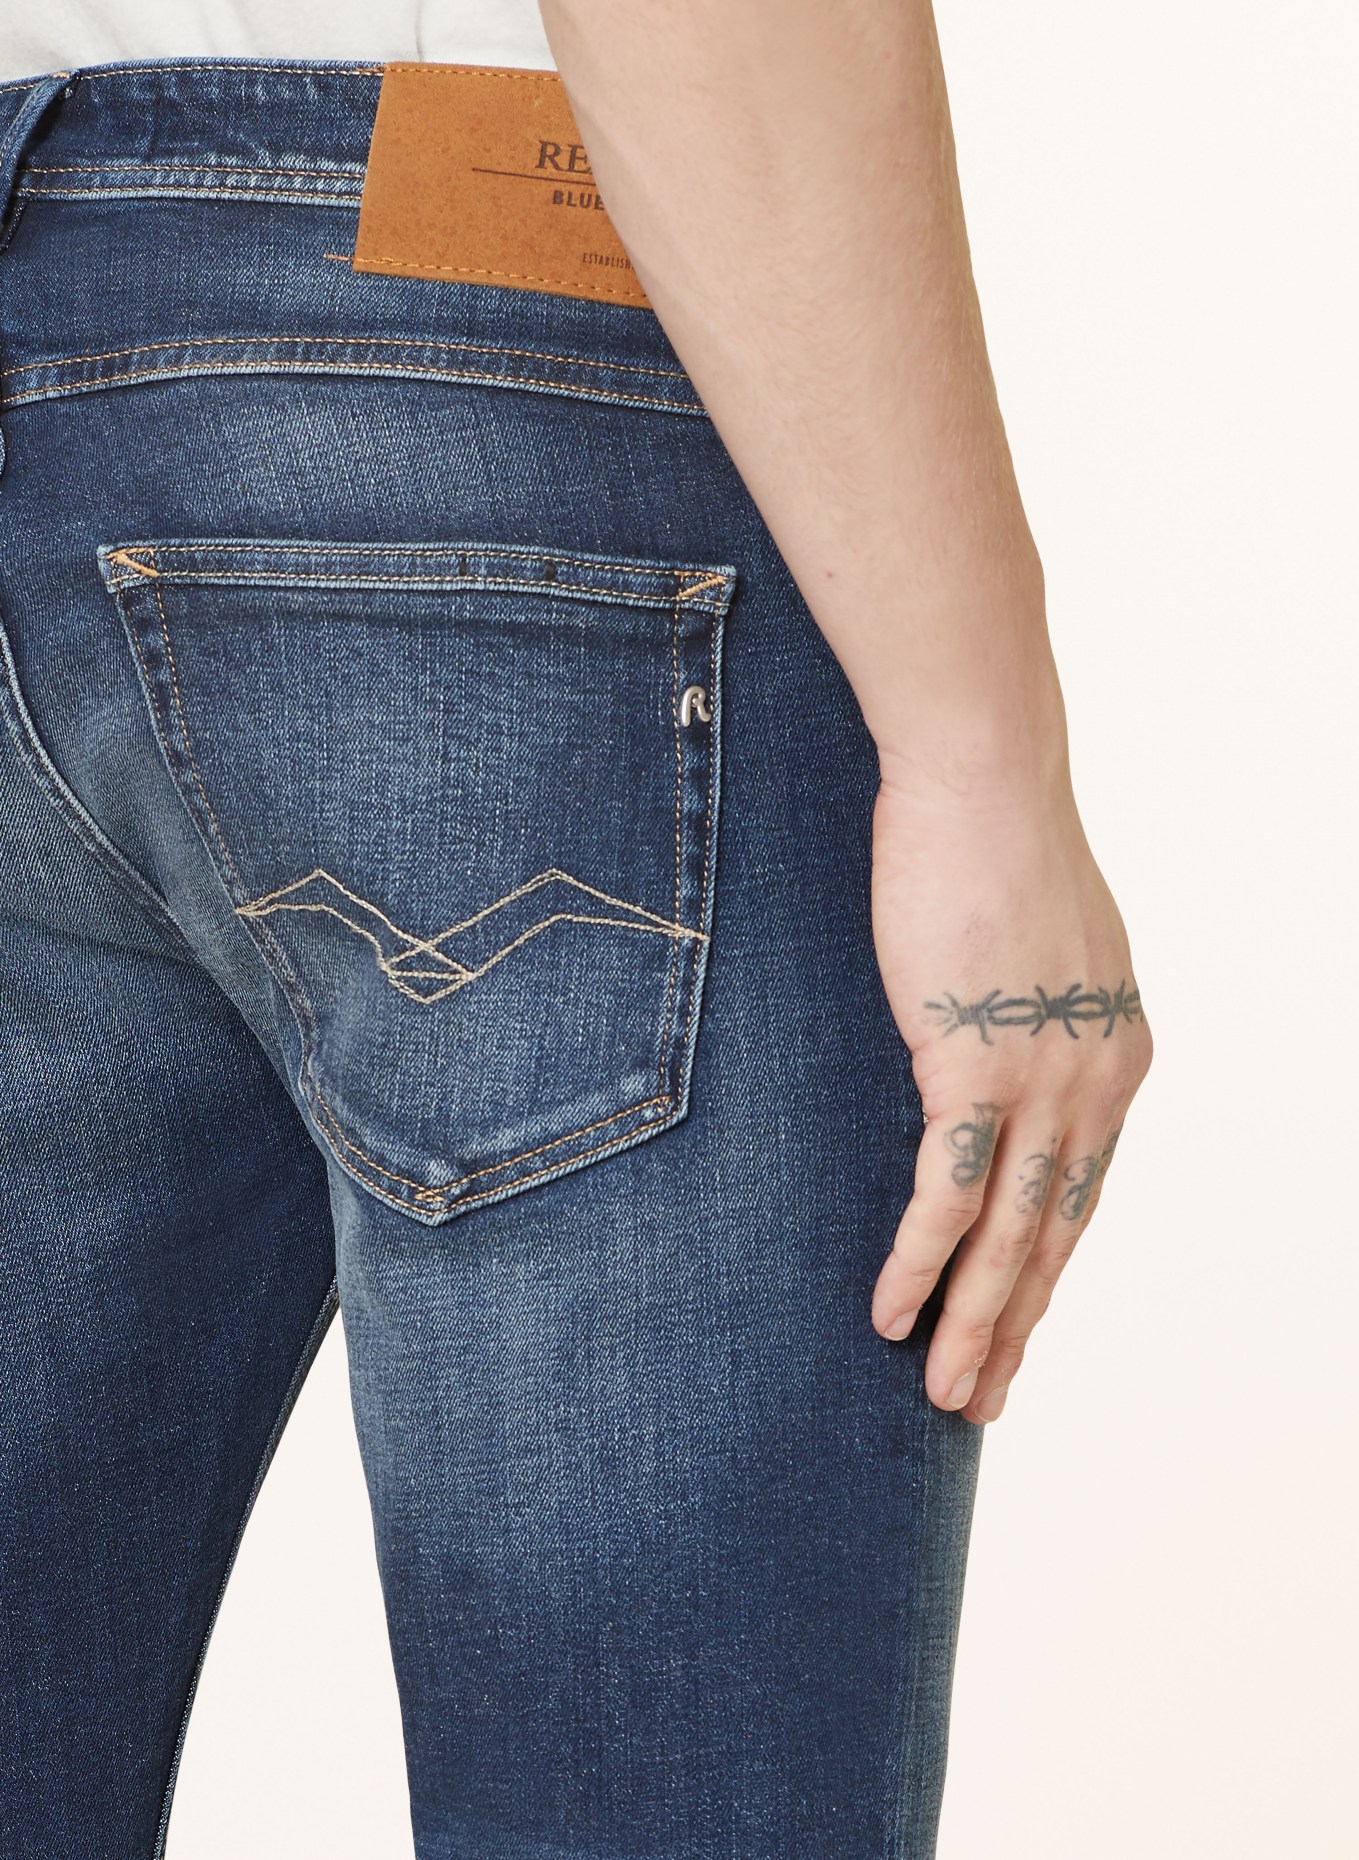 REPLAY Jeans Slim Fit, Farbe: 007 DARK BLUE (Bild 6)